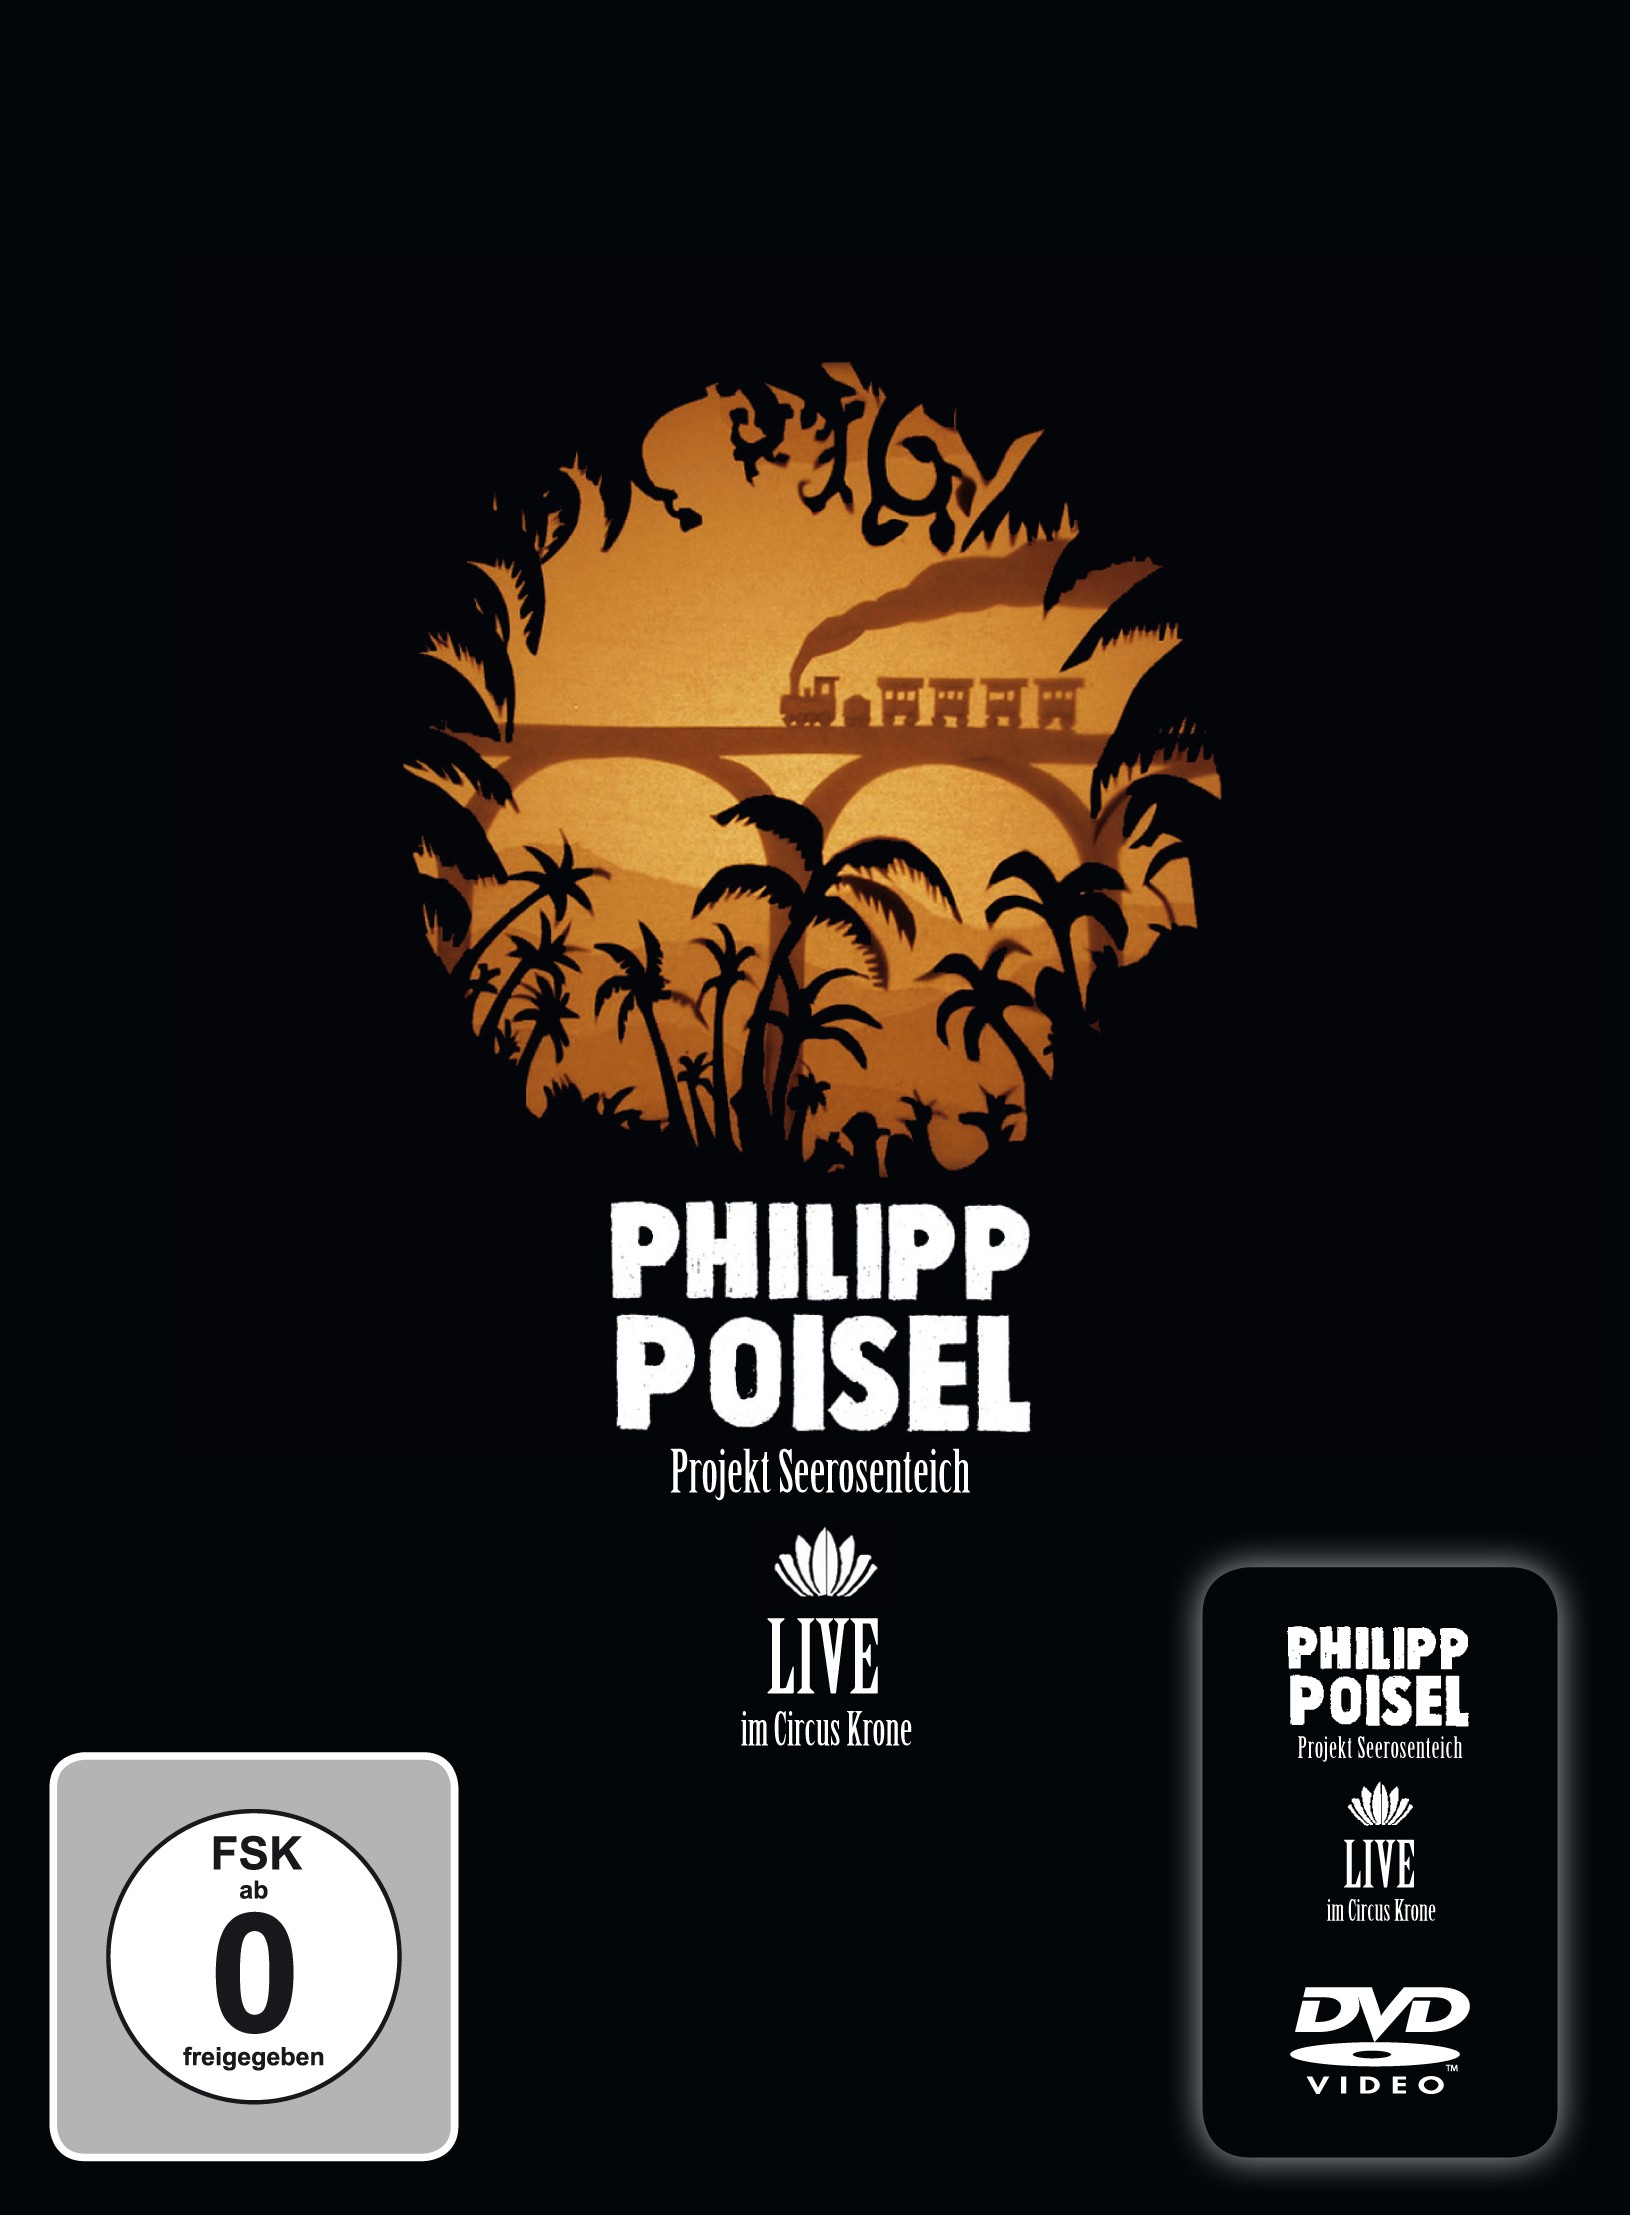 PHILIPP POISEL "Projekt Seerosenteich - Live im Circus Krone" DVD